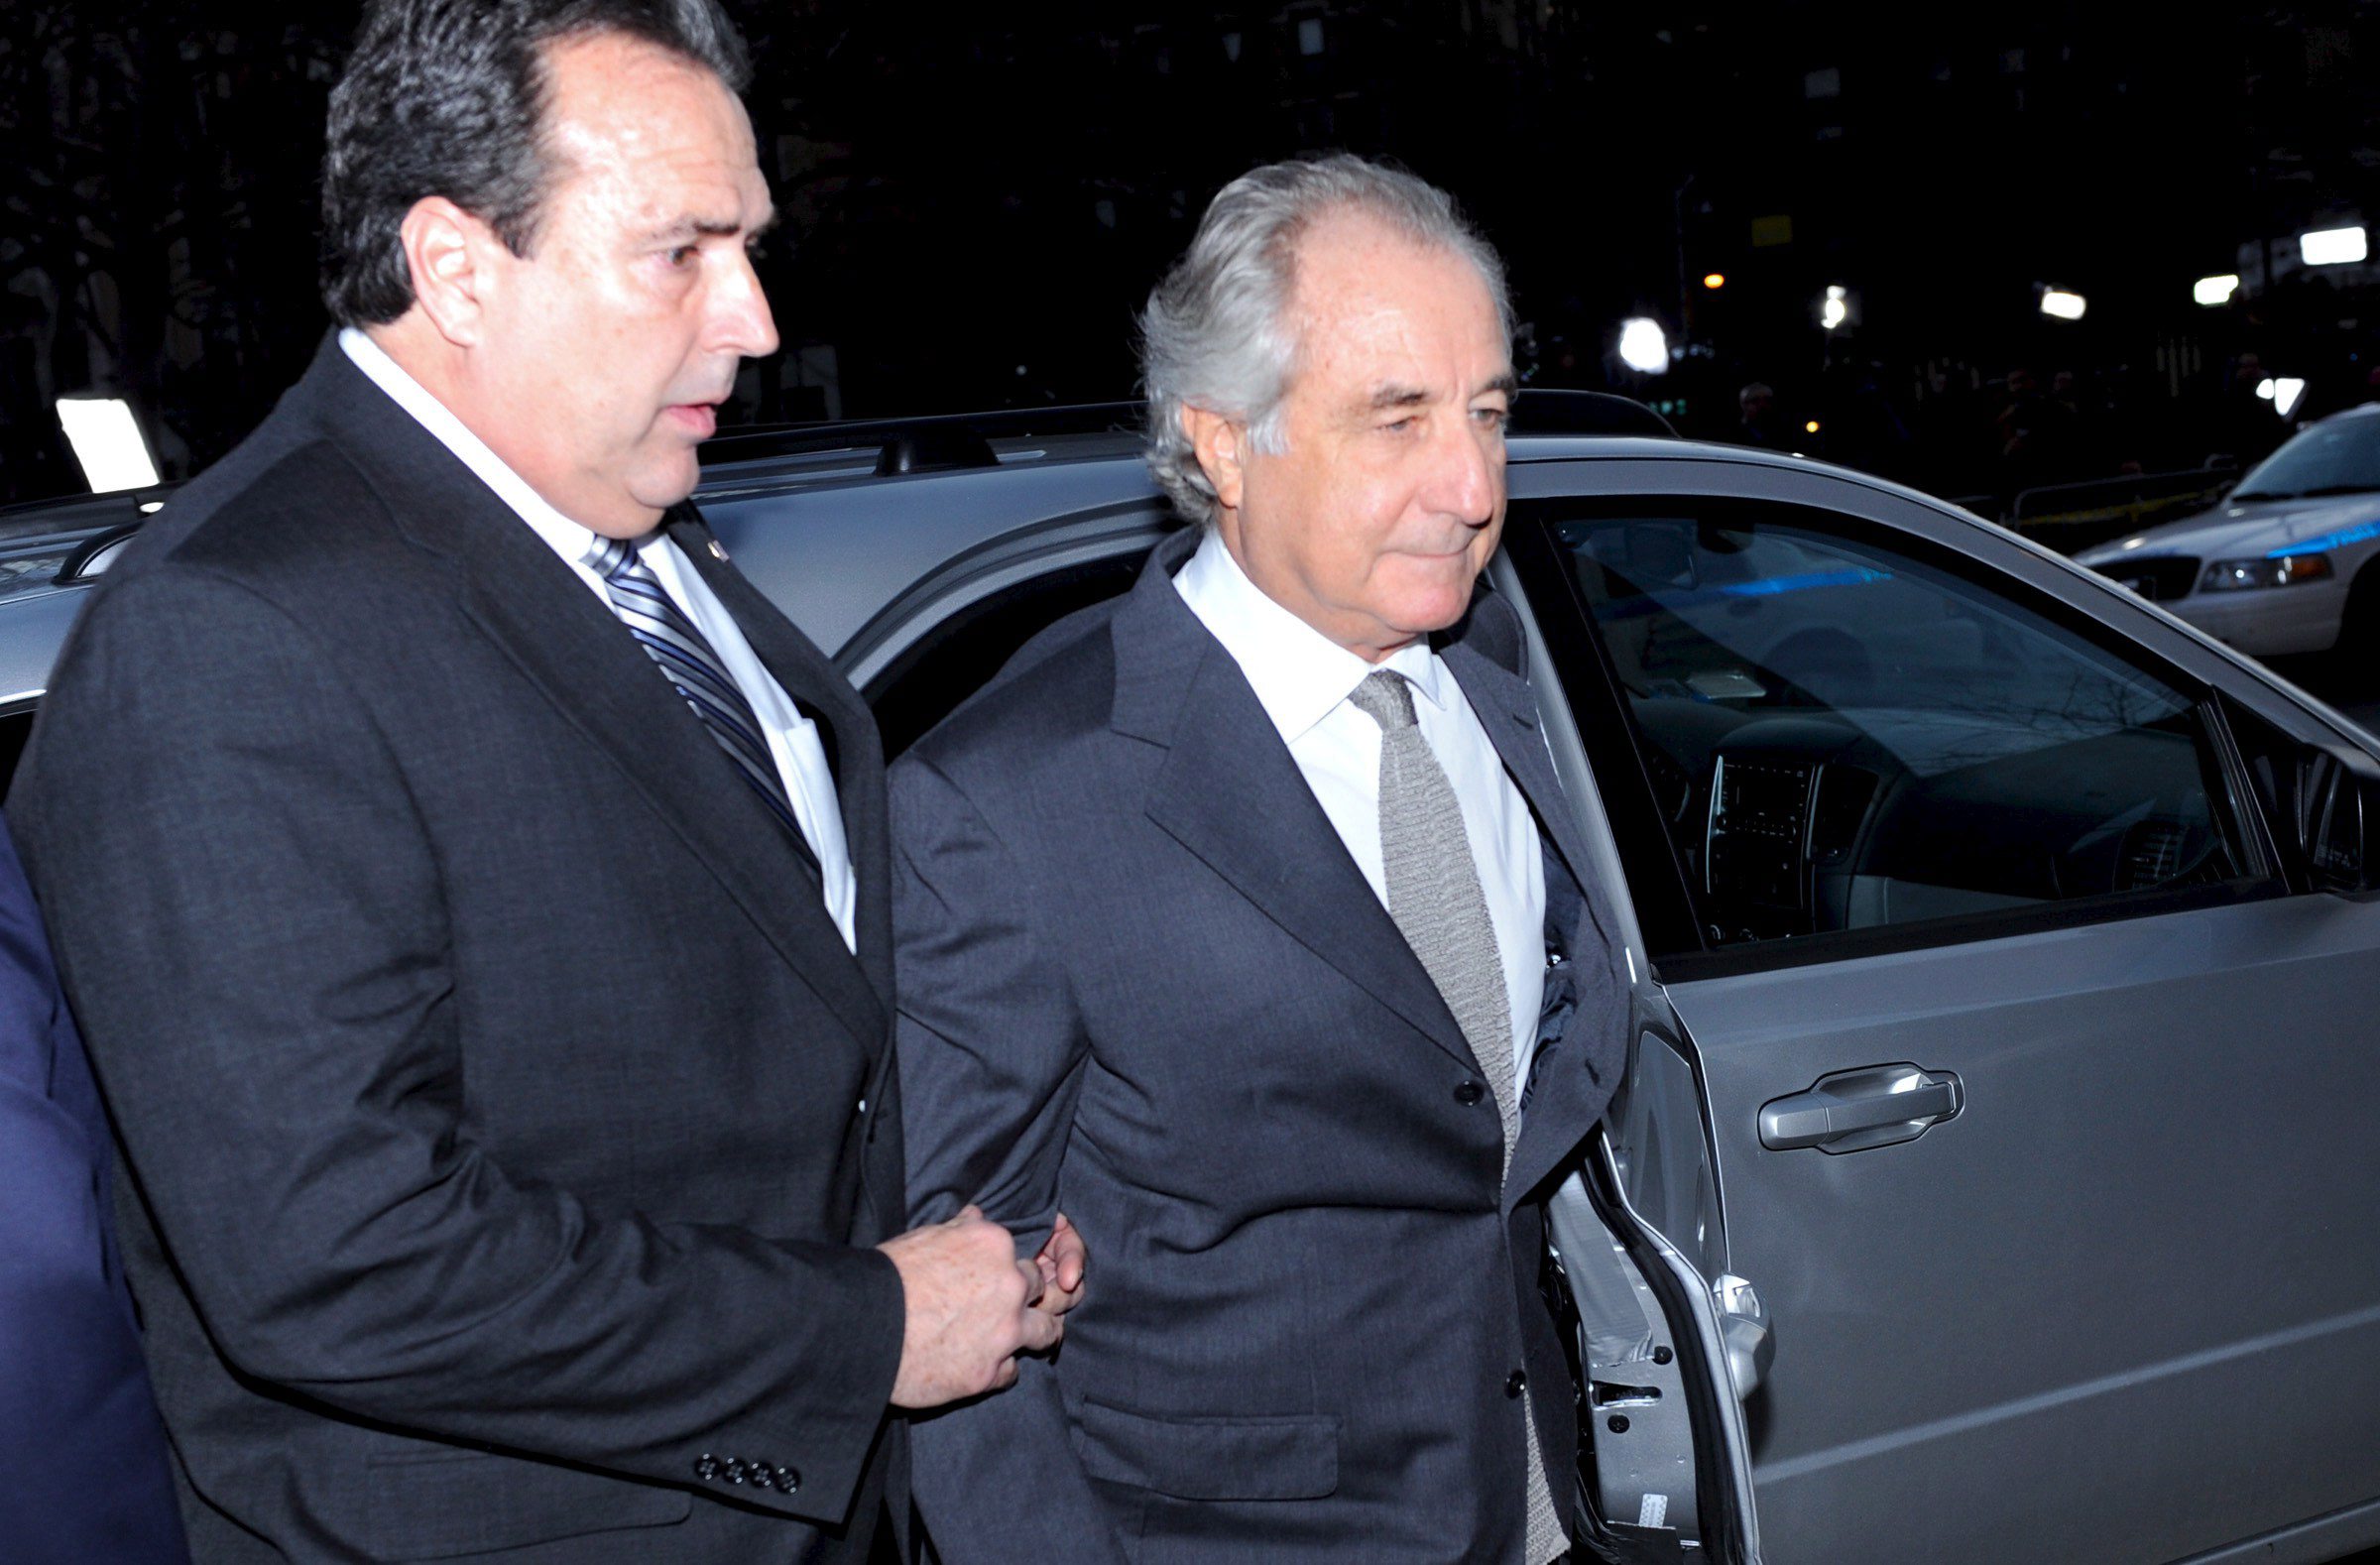 Bernard Madoff in 2009.